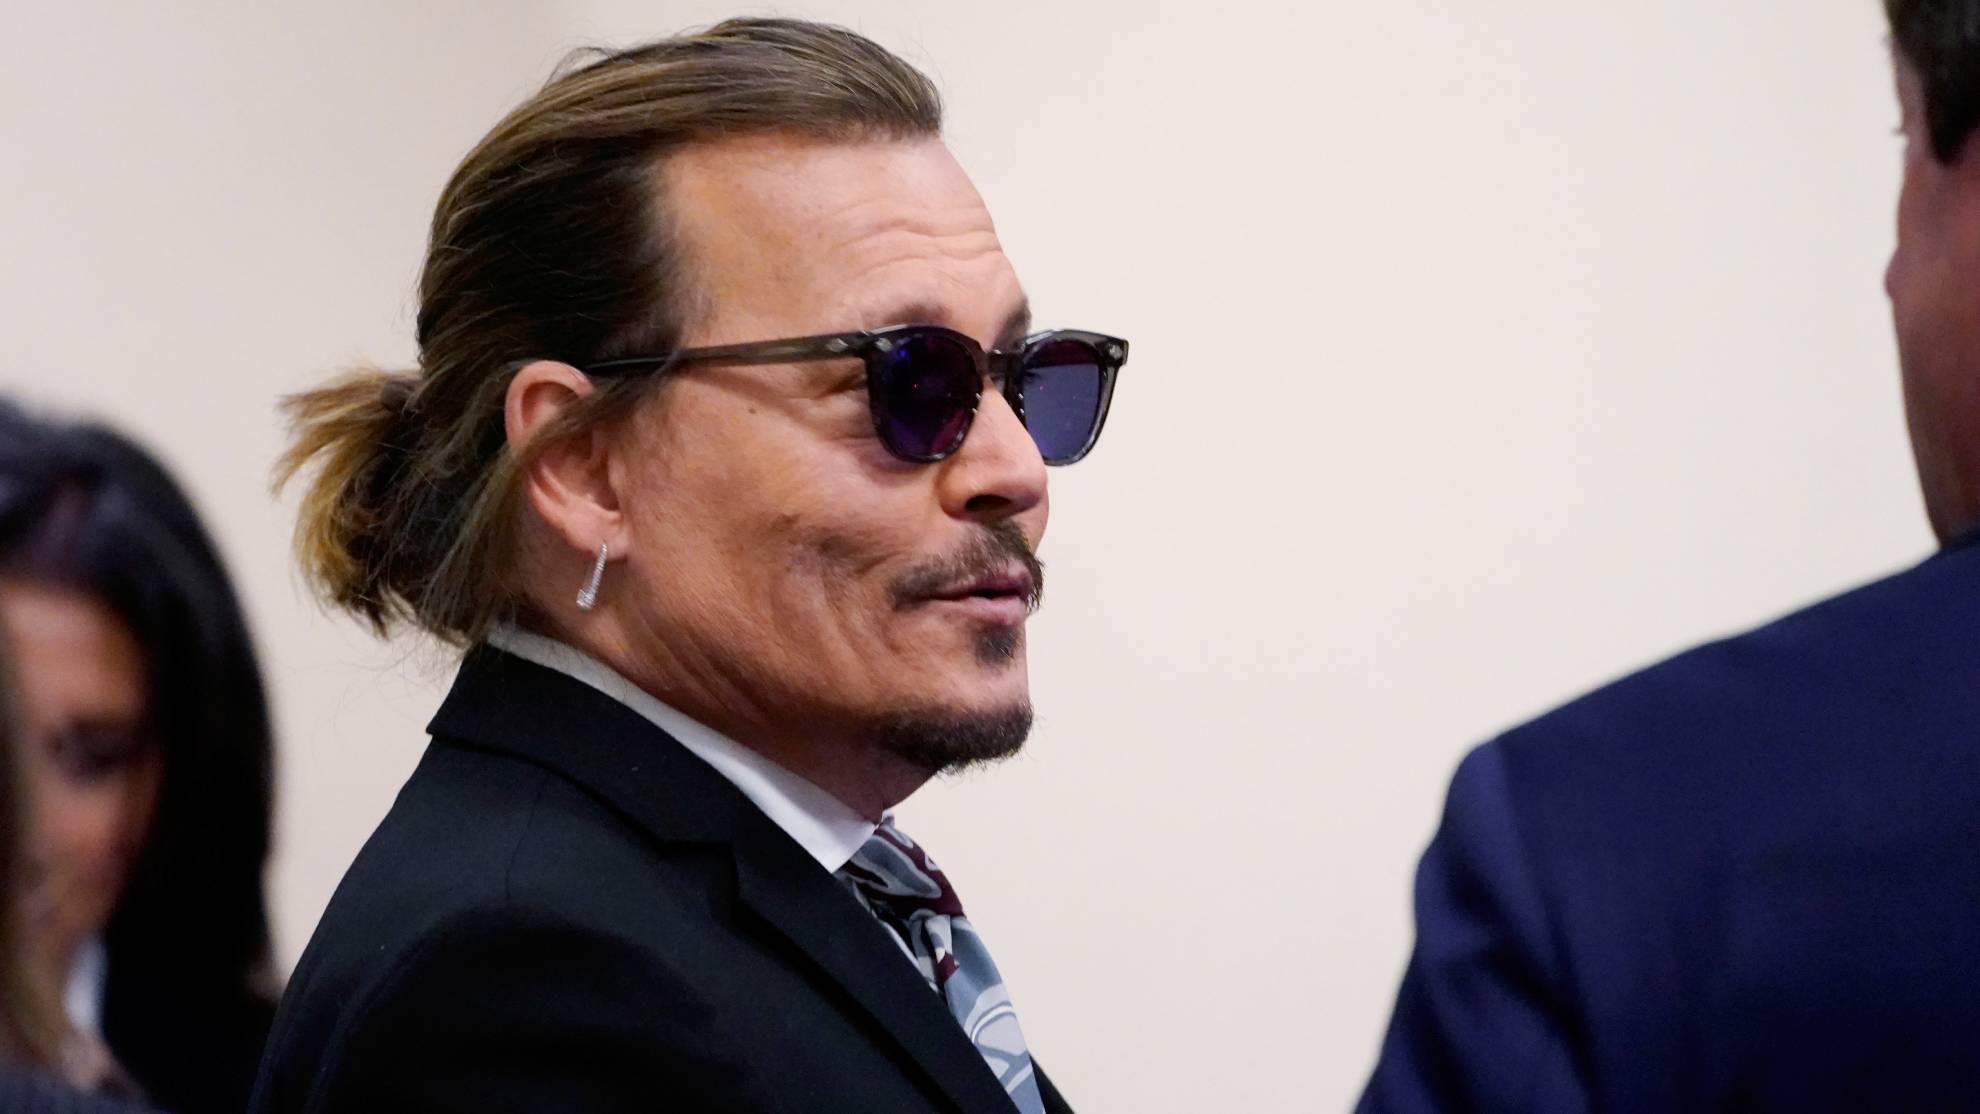 El jurado determinó que Johnny Depp y Amber Heard se difamaron mutuamente: ella deberá pagar USD 15 millones y él USD 2 millones